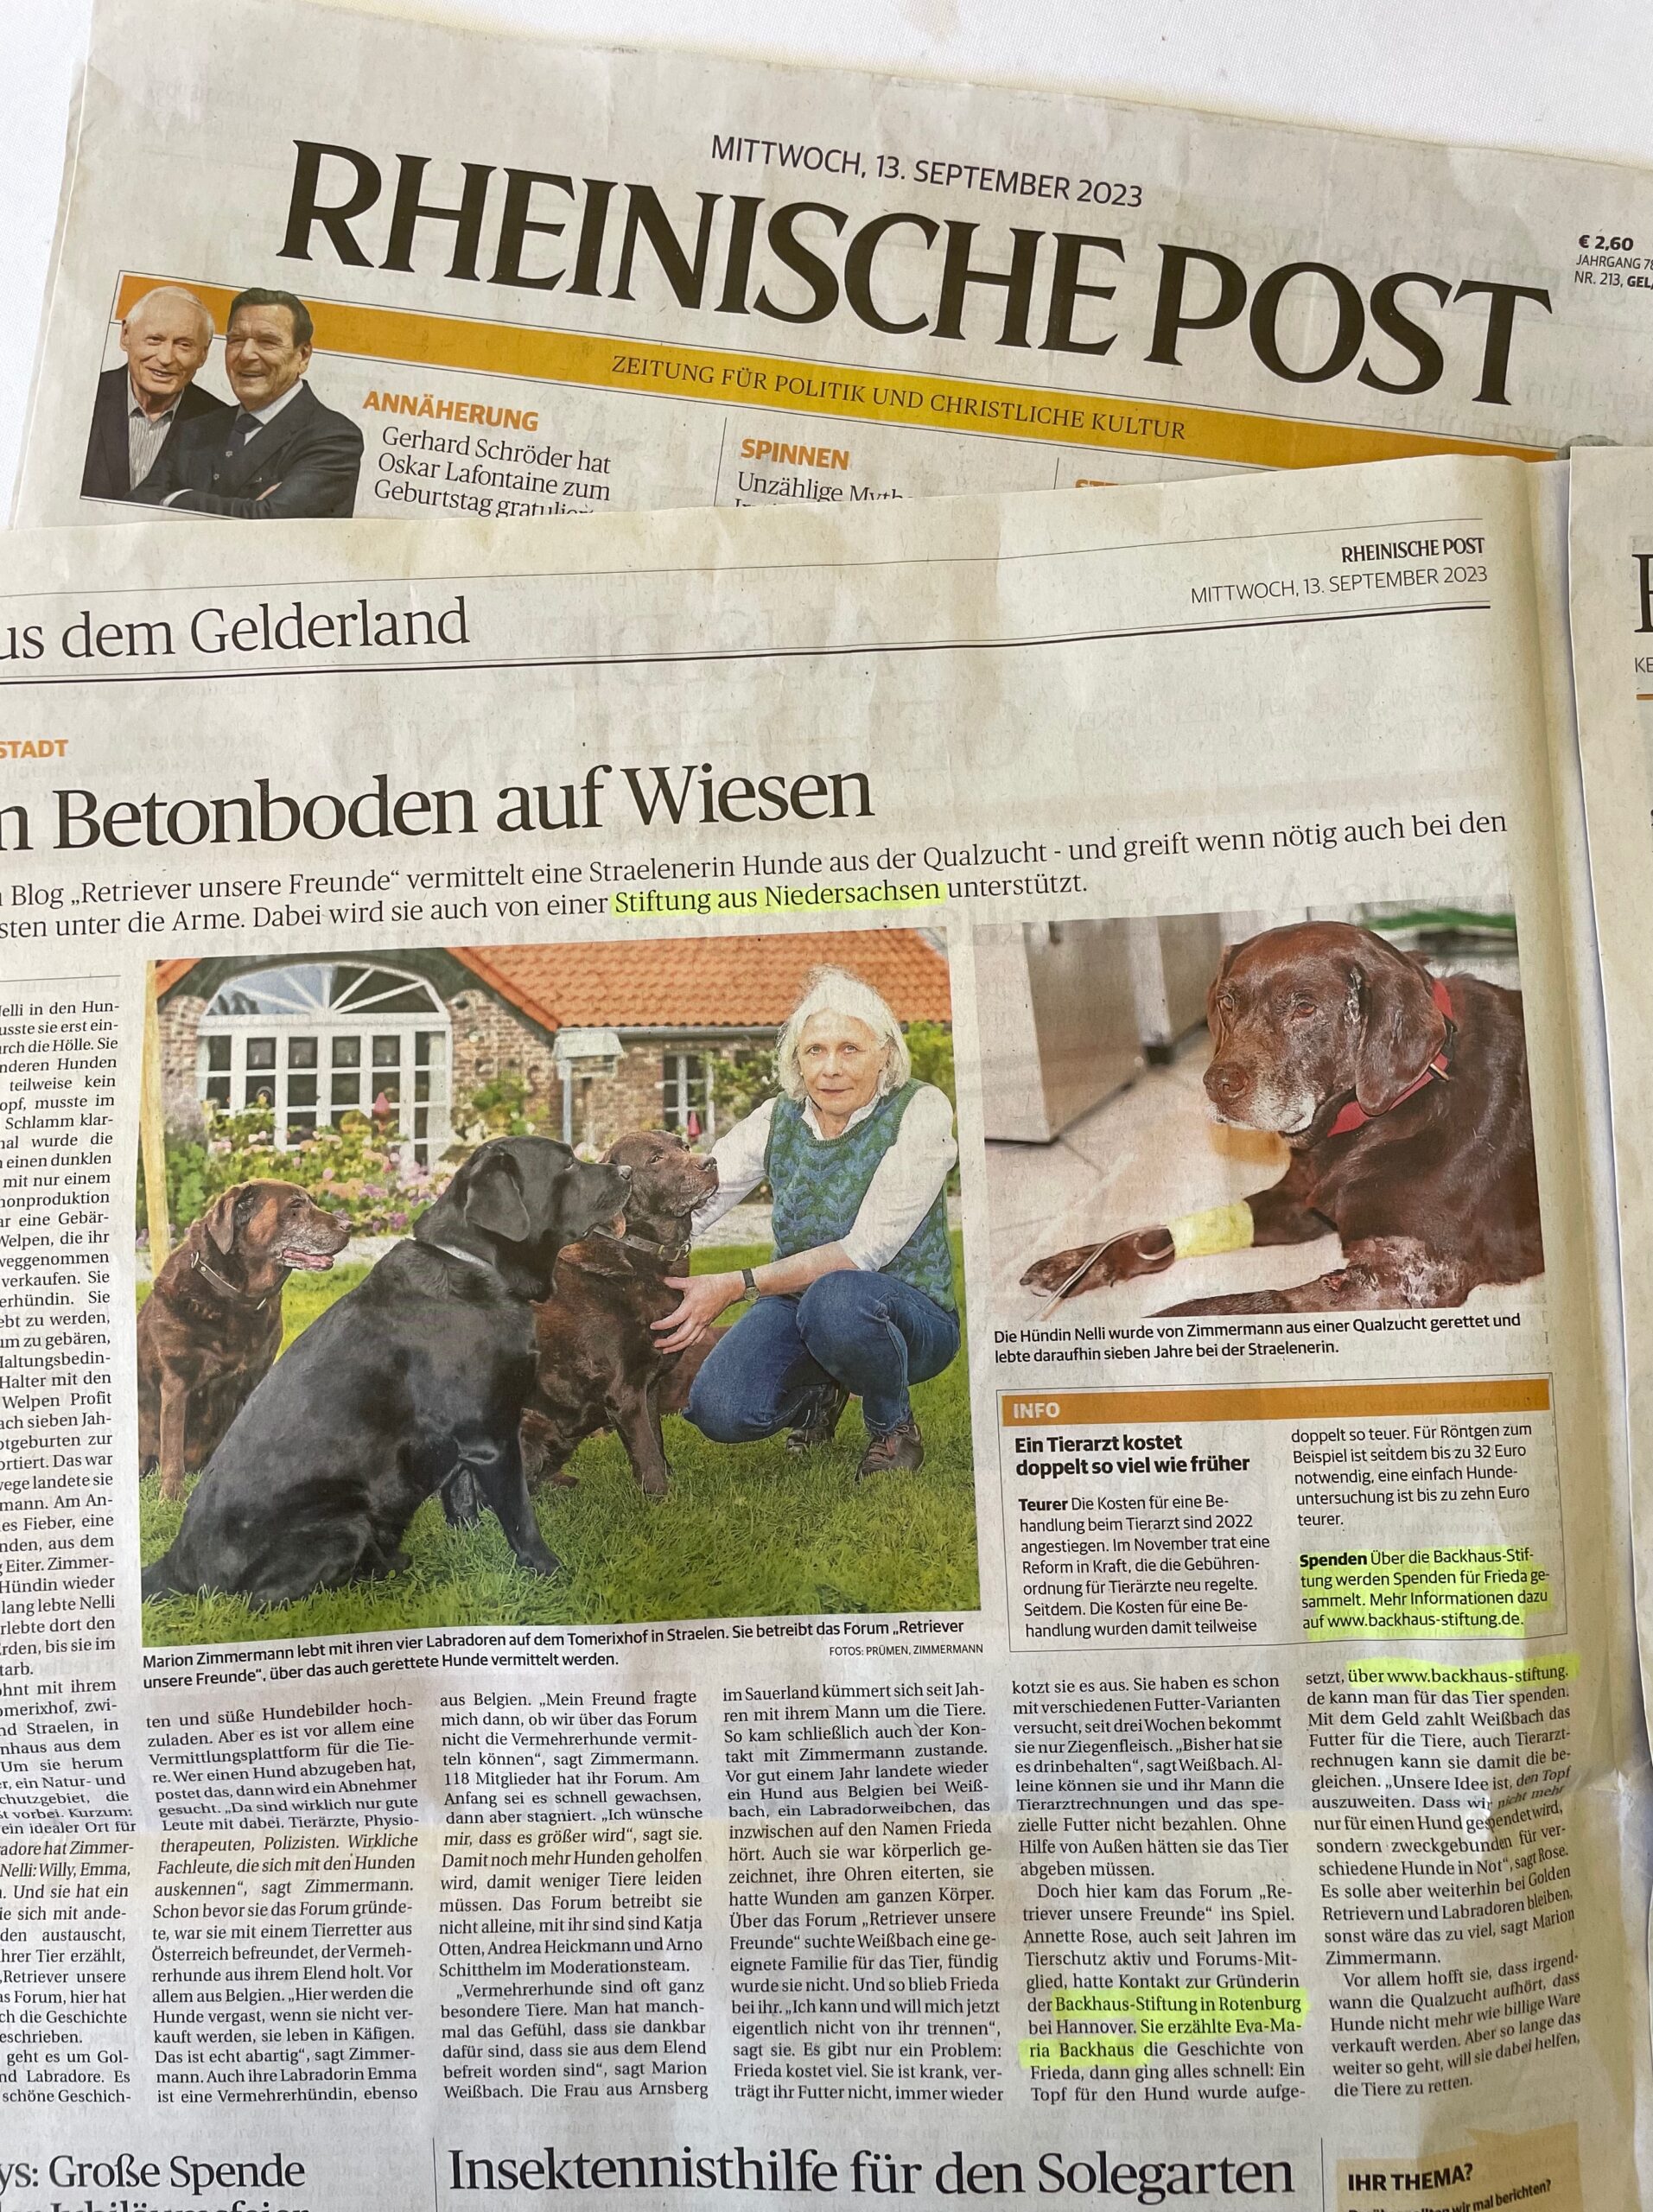 Kurze News: Berichterstattung in der Rheinische Post